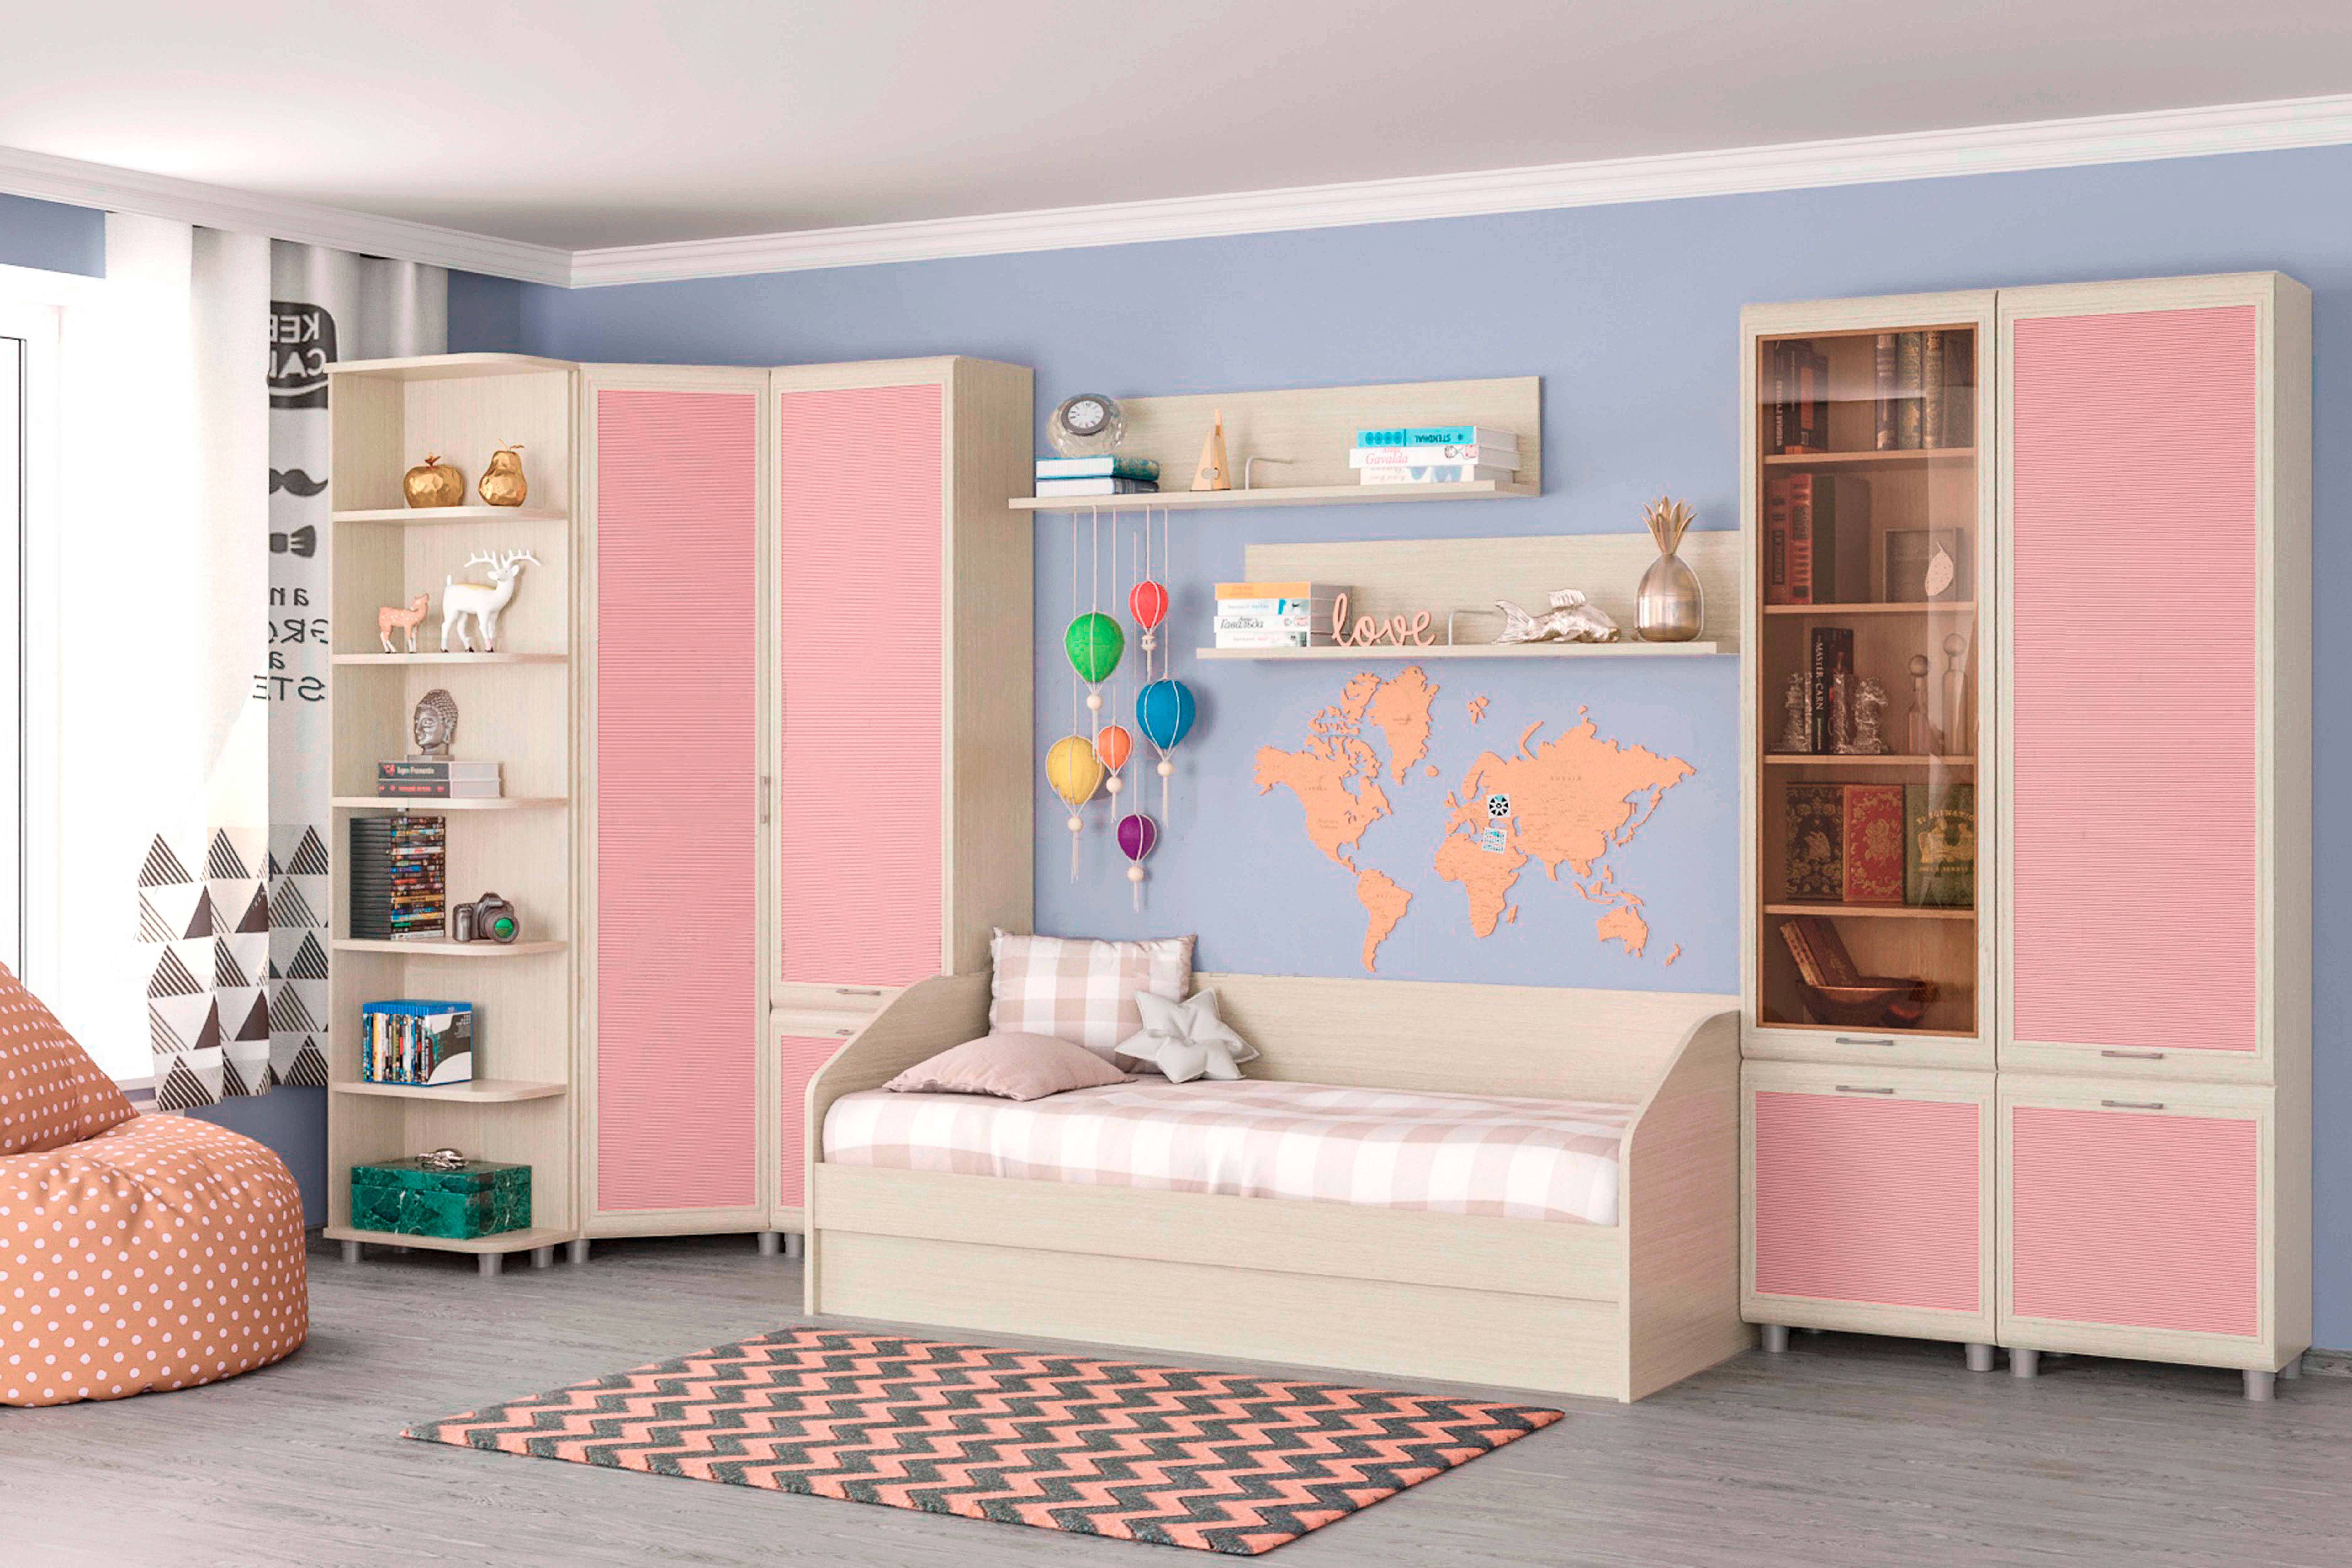 Детская мебель комплект Ксюша из МДФ 90*190 см Дуб Беленый с розовыми вставками (ler-1561)